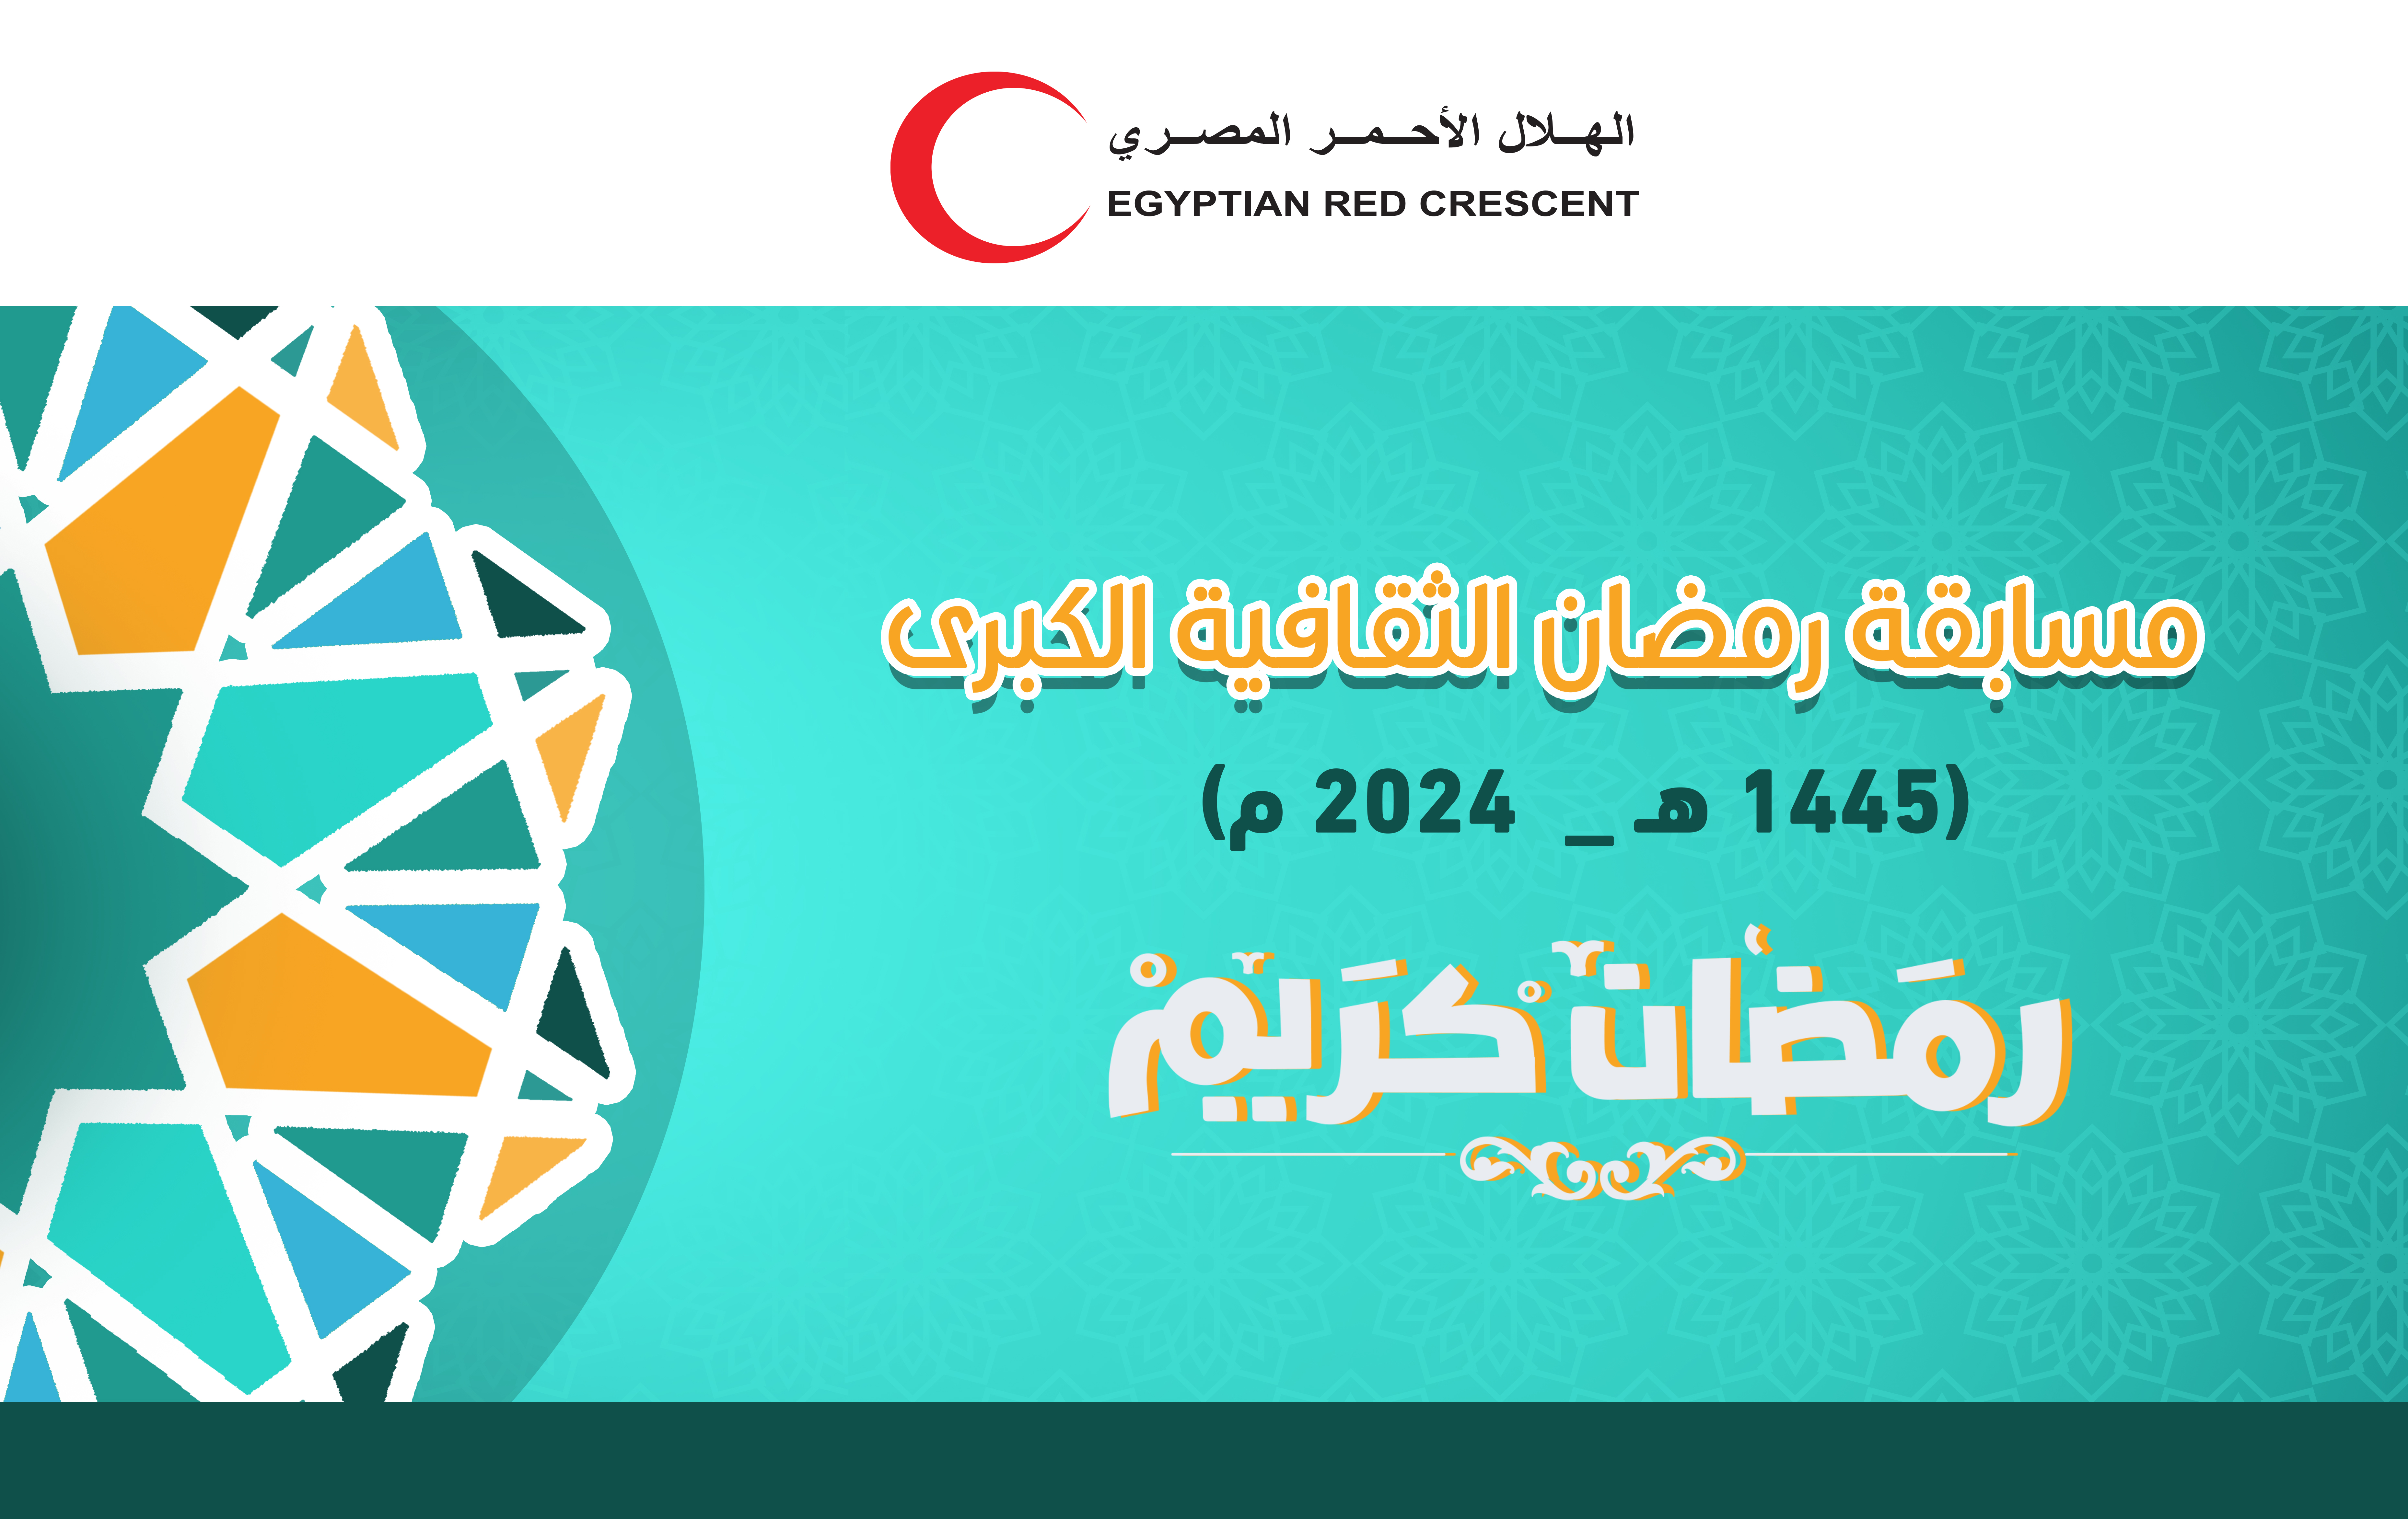 مسابقة رمضان الثقافية الكبري 2024 م